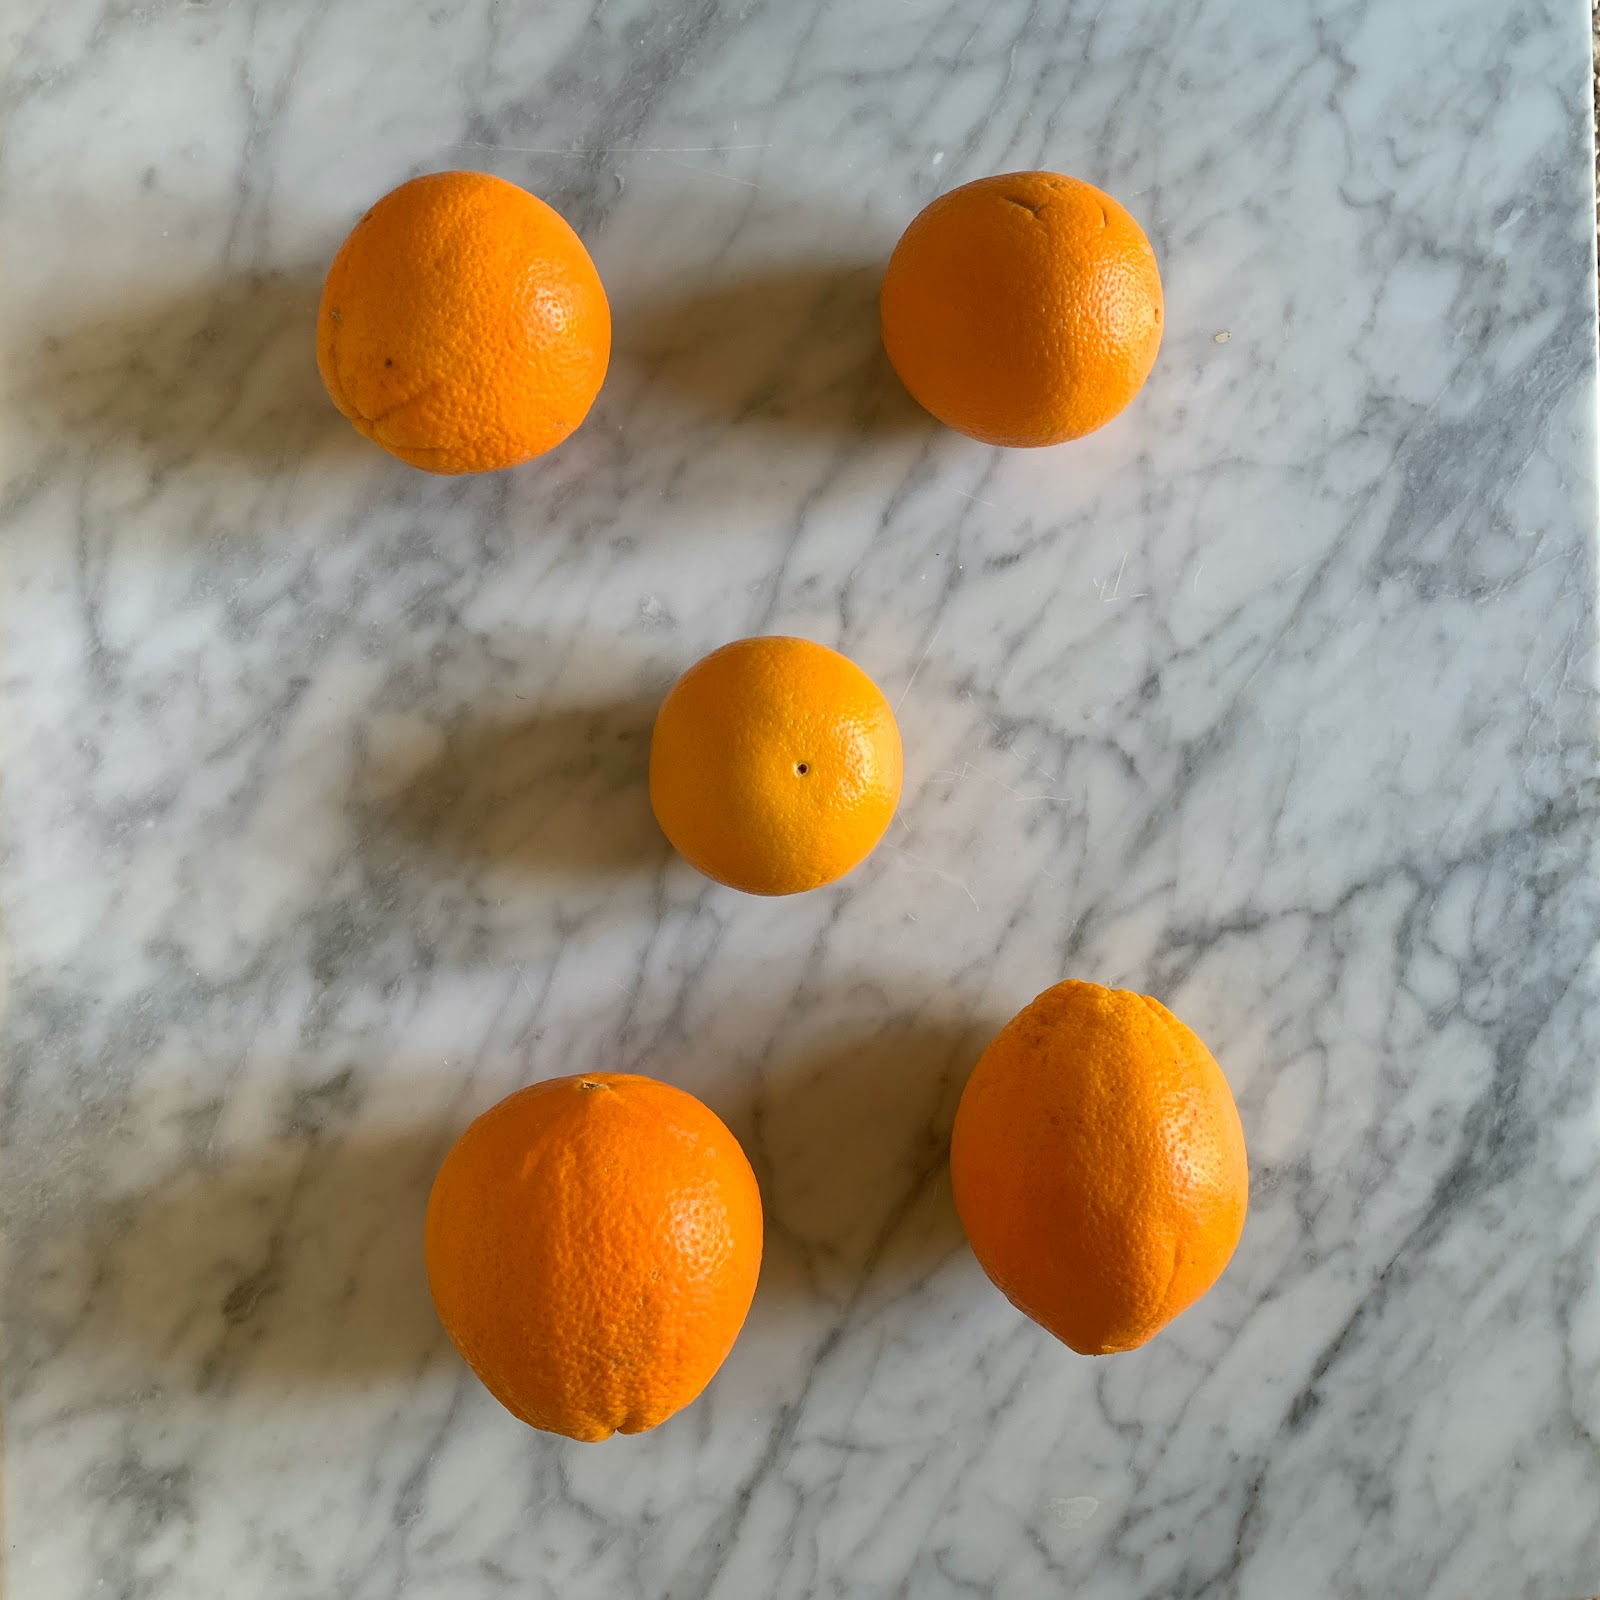 Las naranjas están ordenadas como puntos de un dado o un dominó. 2 luego 1 luego 2 más.